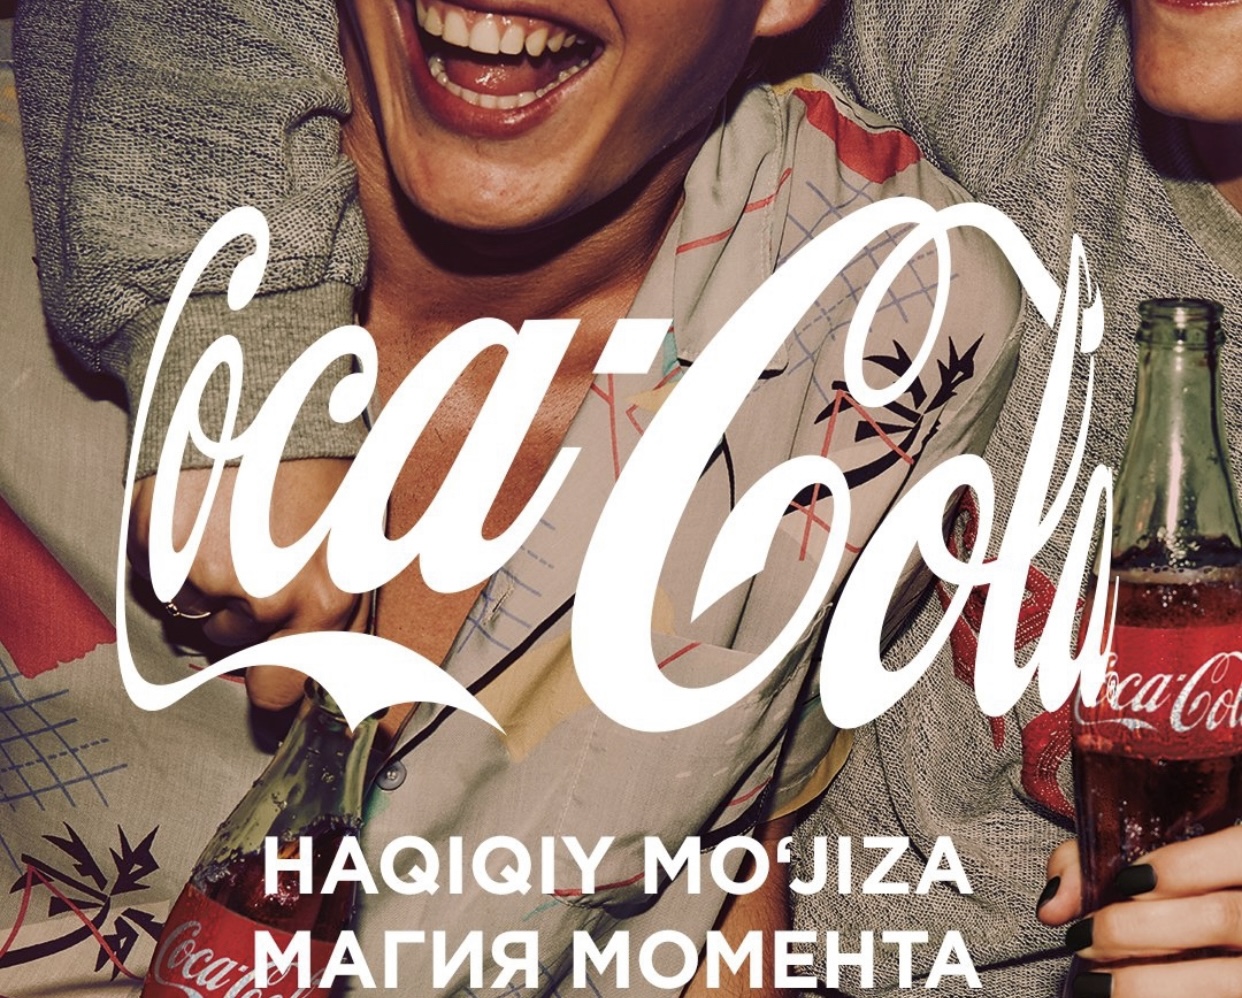 Coca-Cola предлагает окунуться в «Магию момента»